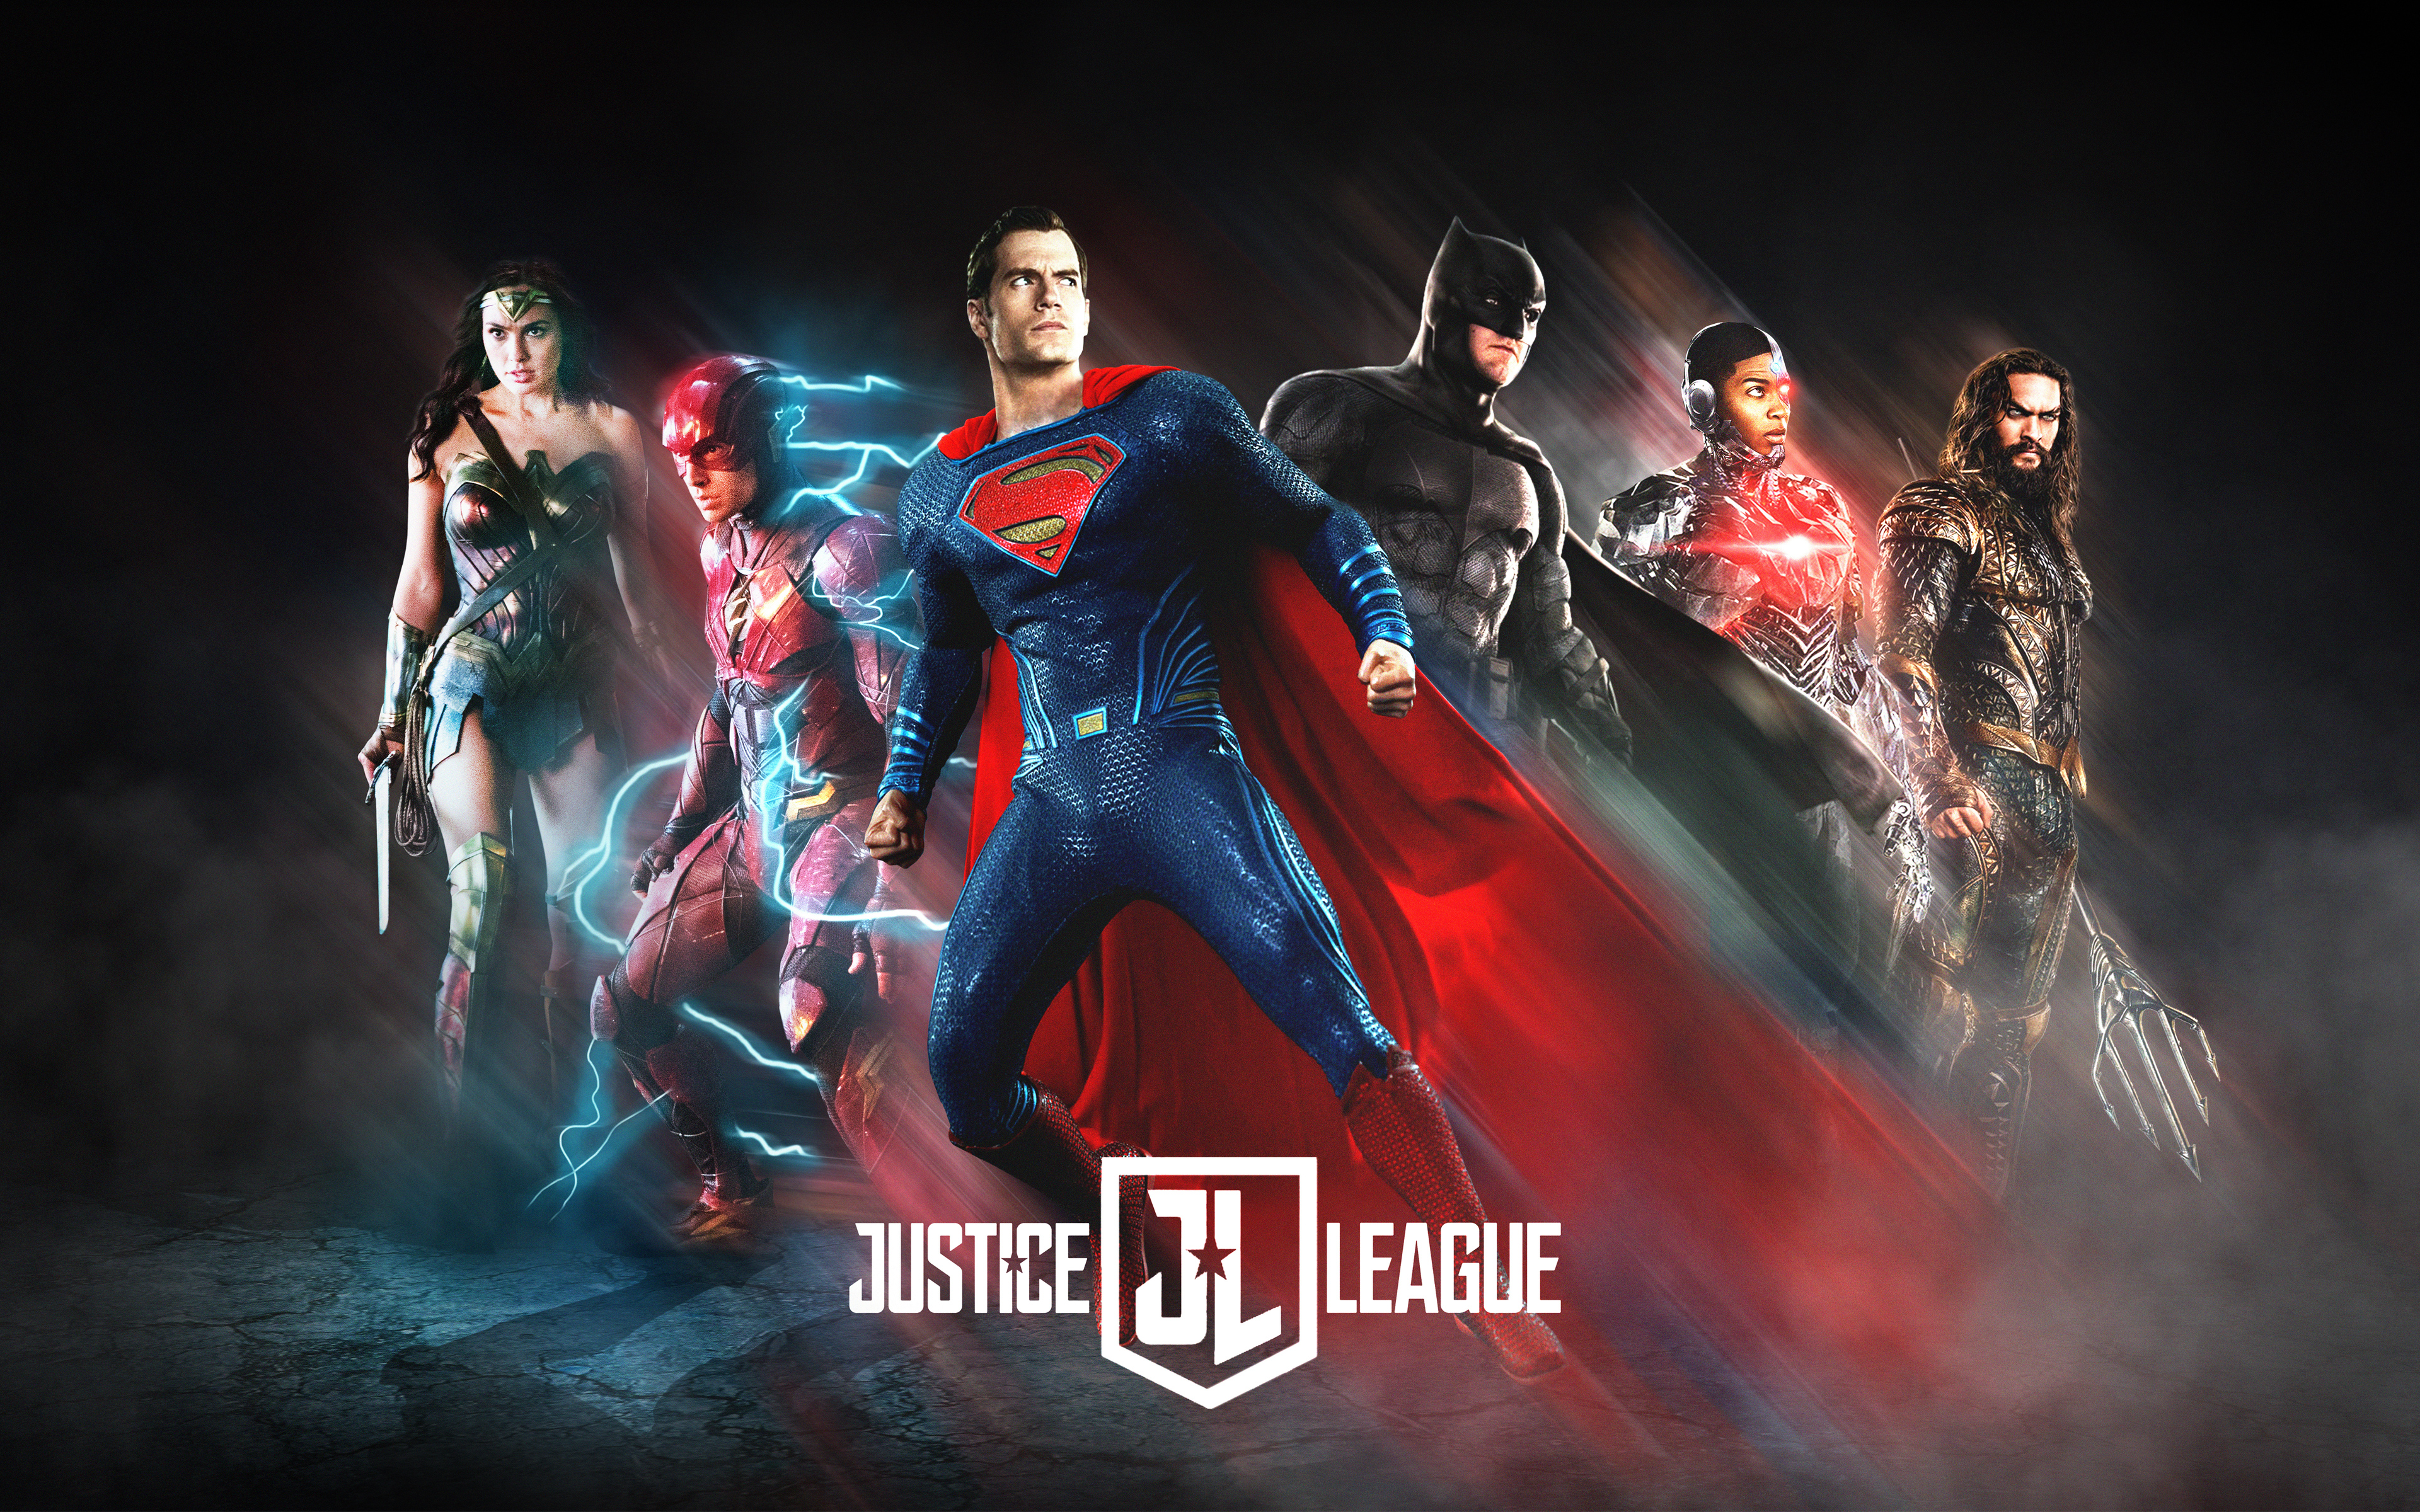 Justice League 2017 Poster Fan Art, HD 4K Wallpaper